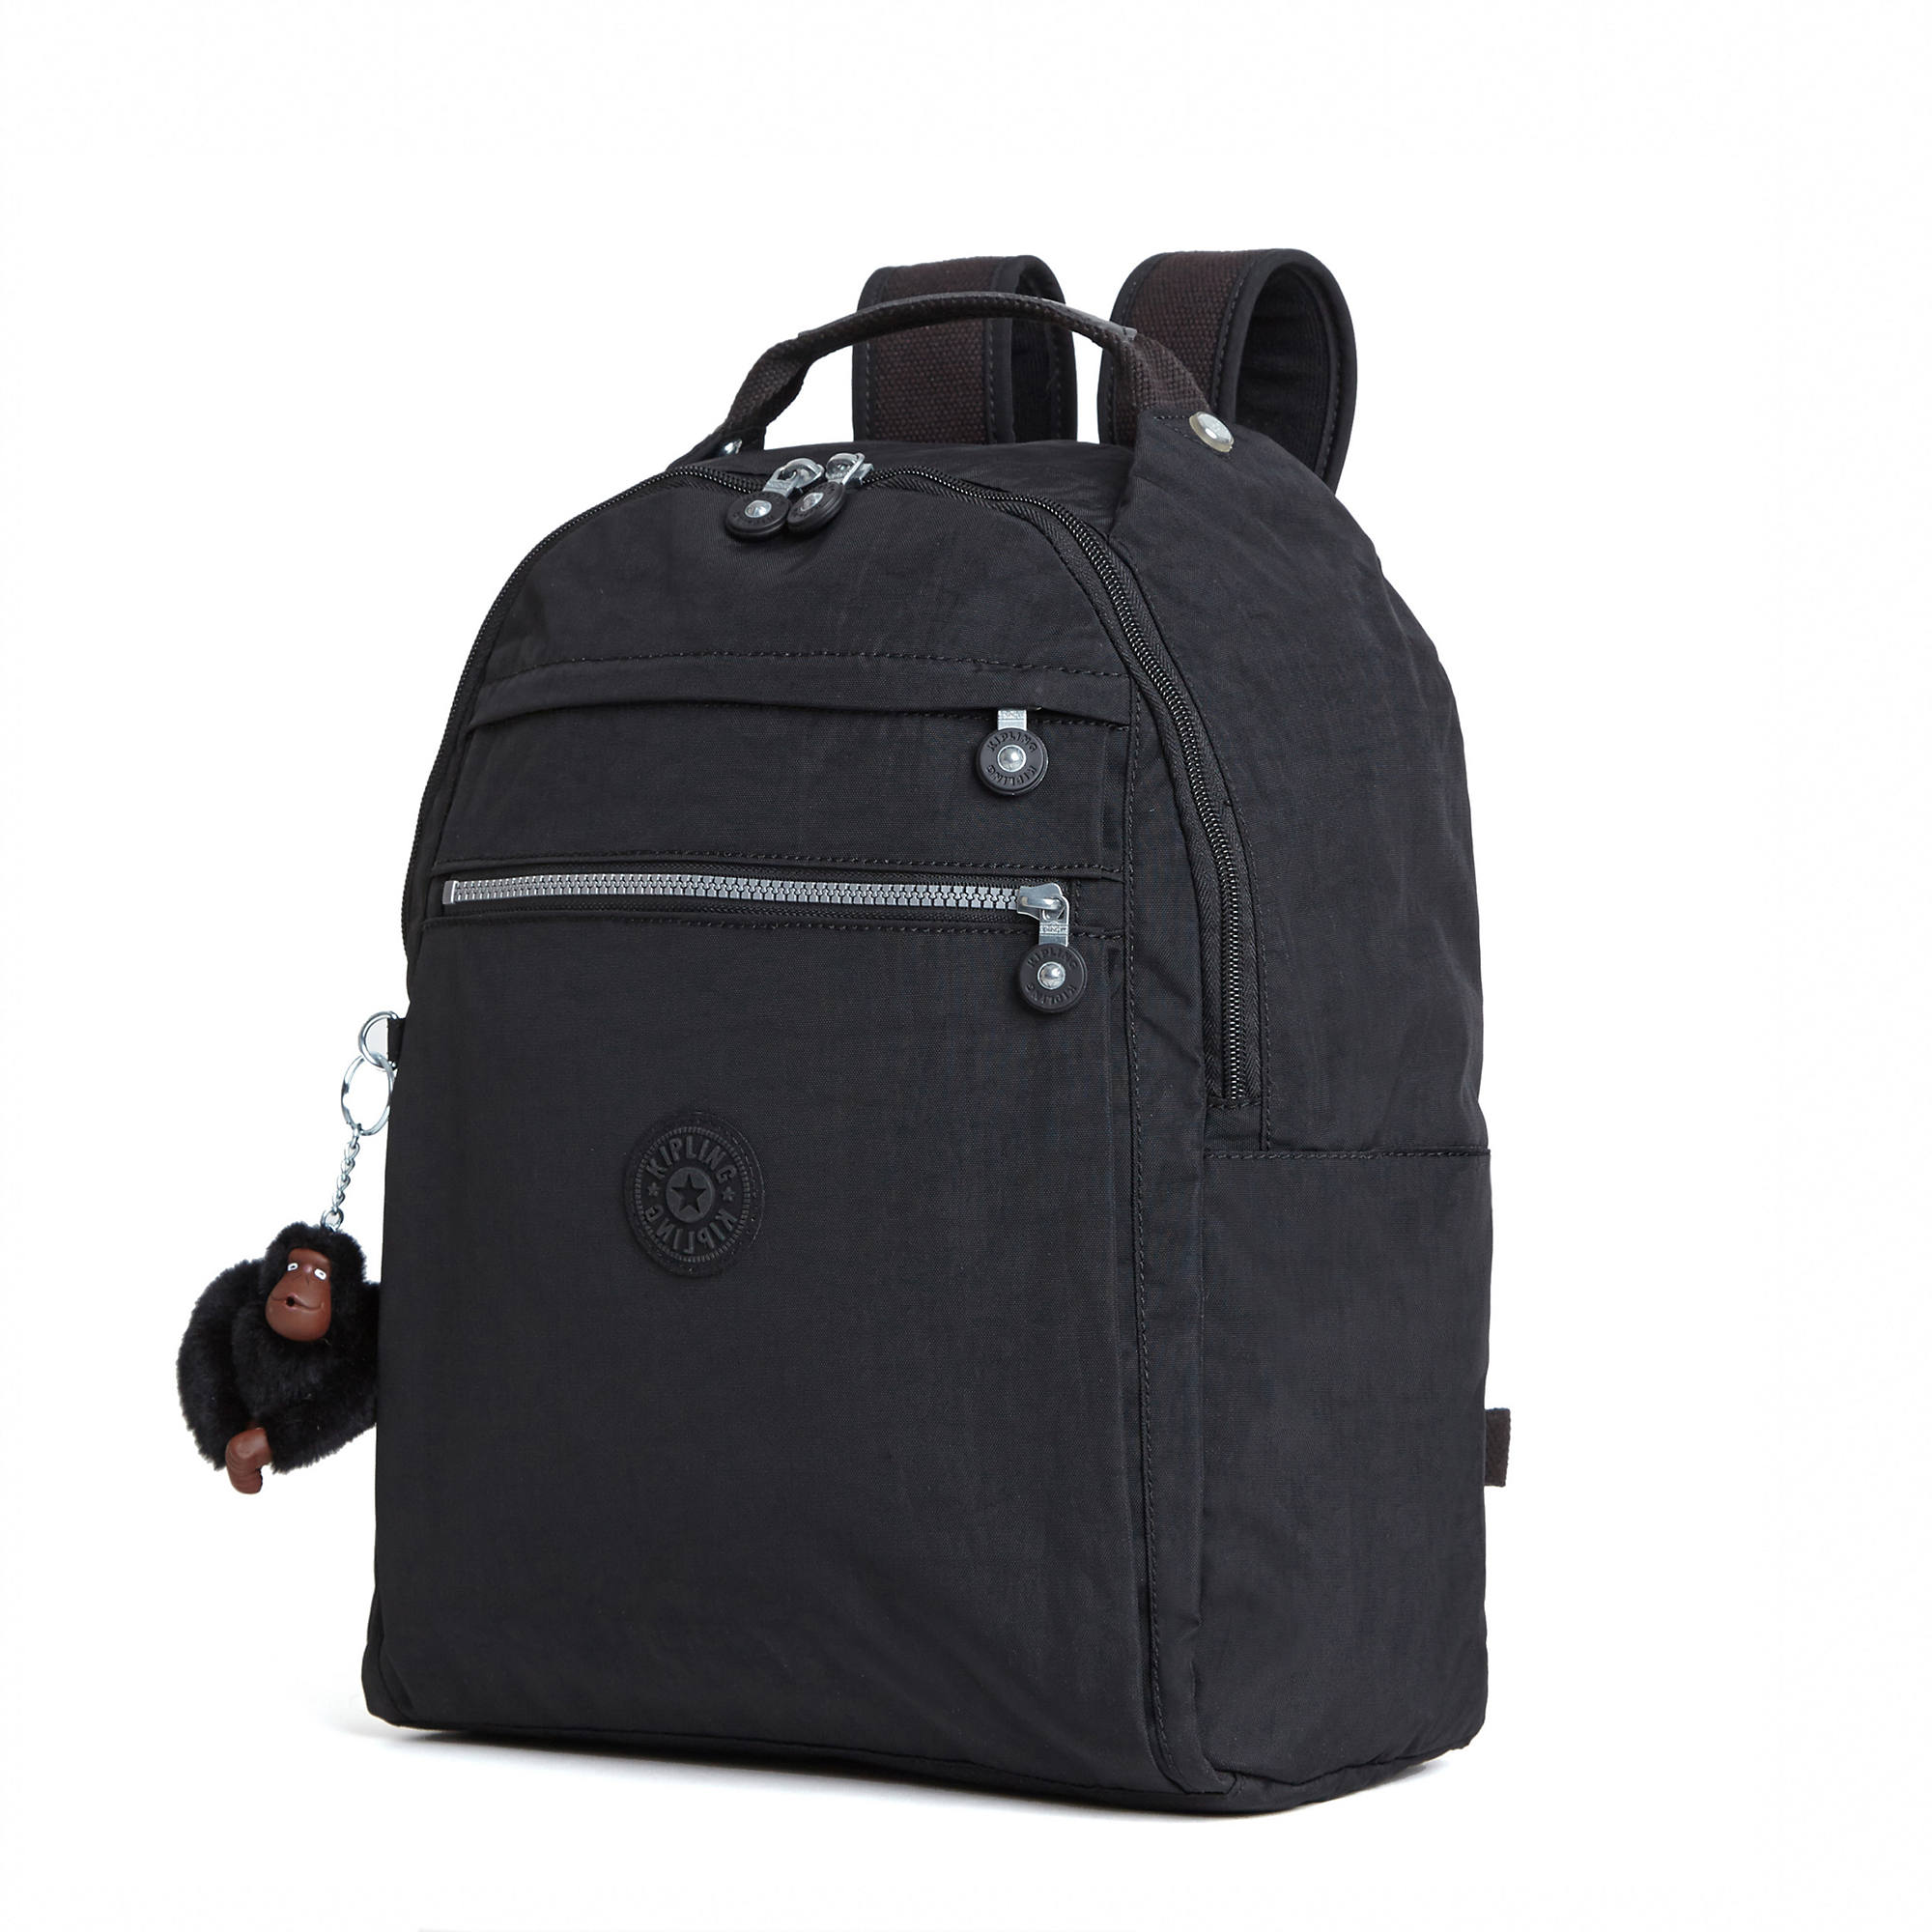 Kipling Micah Printed Medium Laptop Backpack | eBay